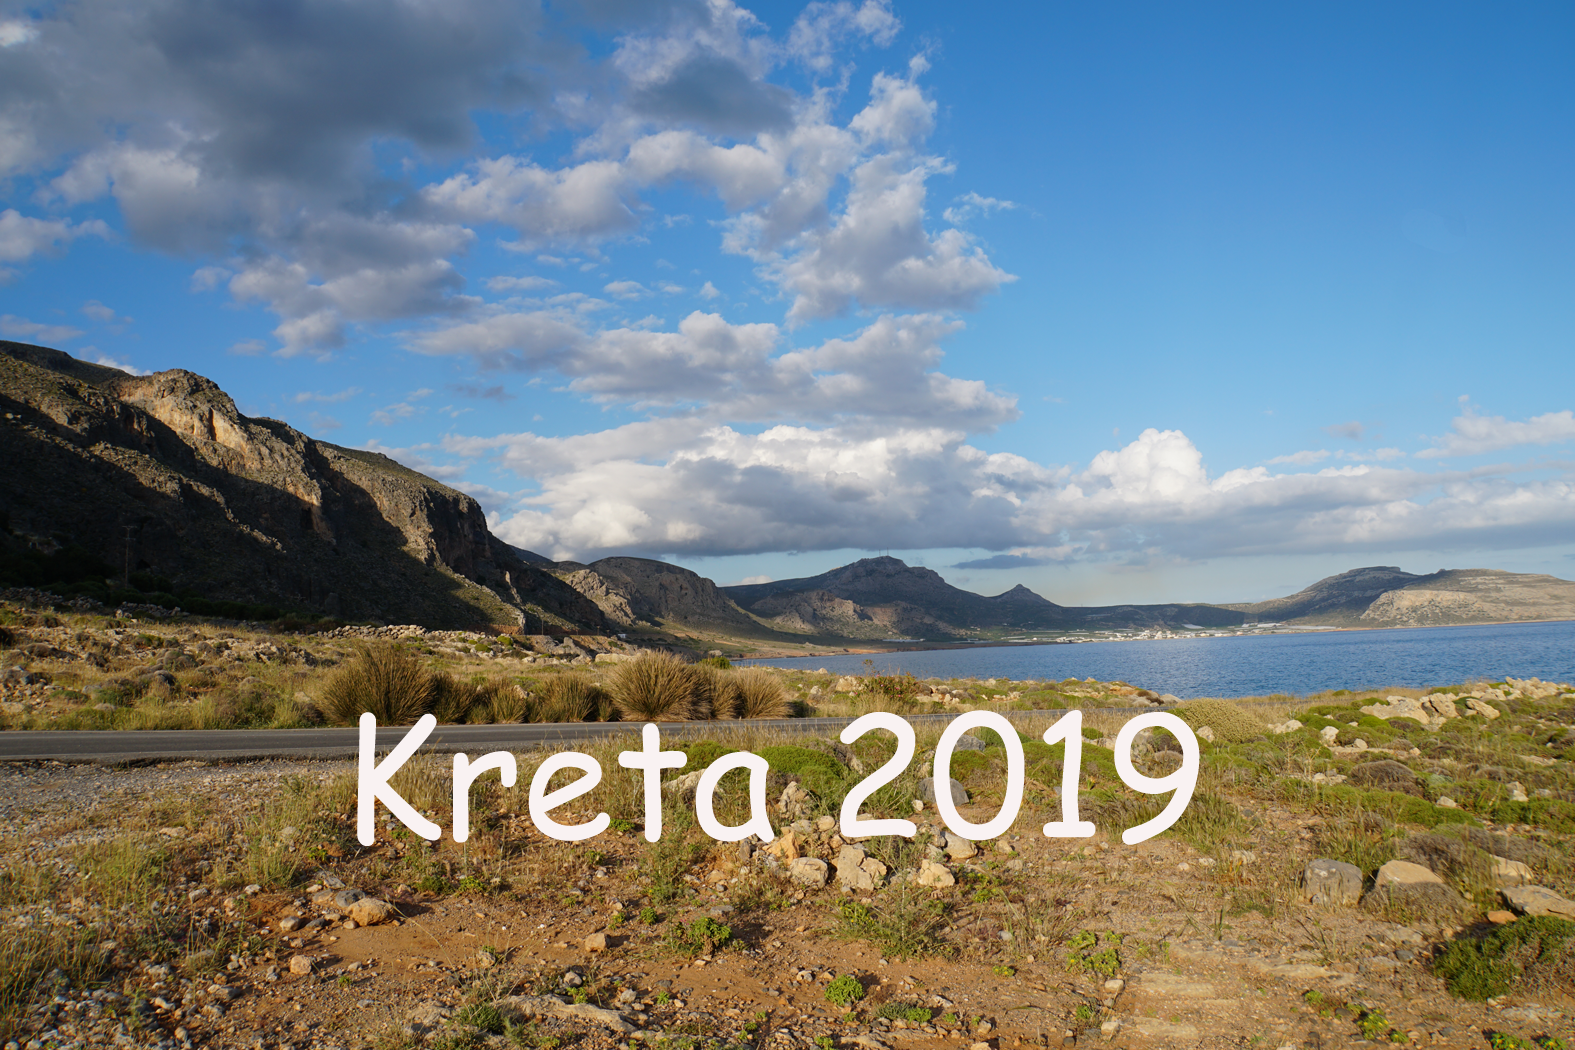 Kreta 2019